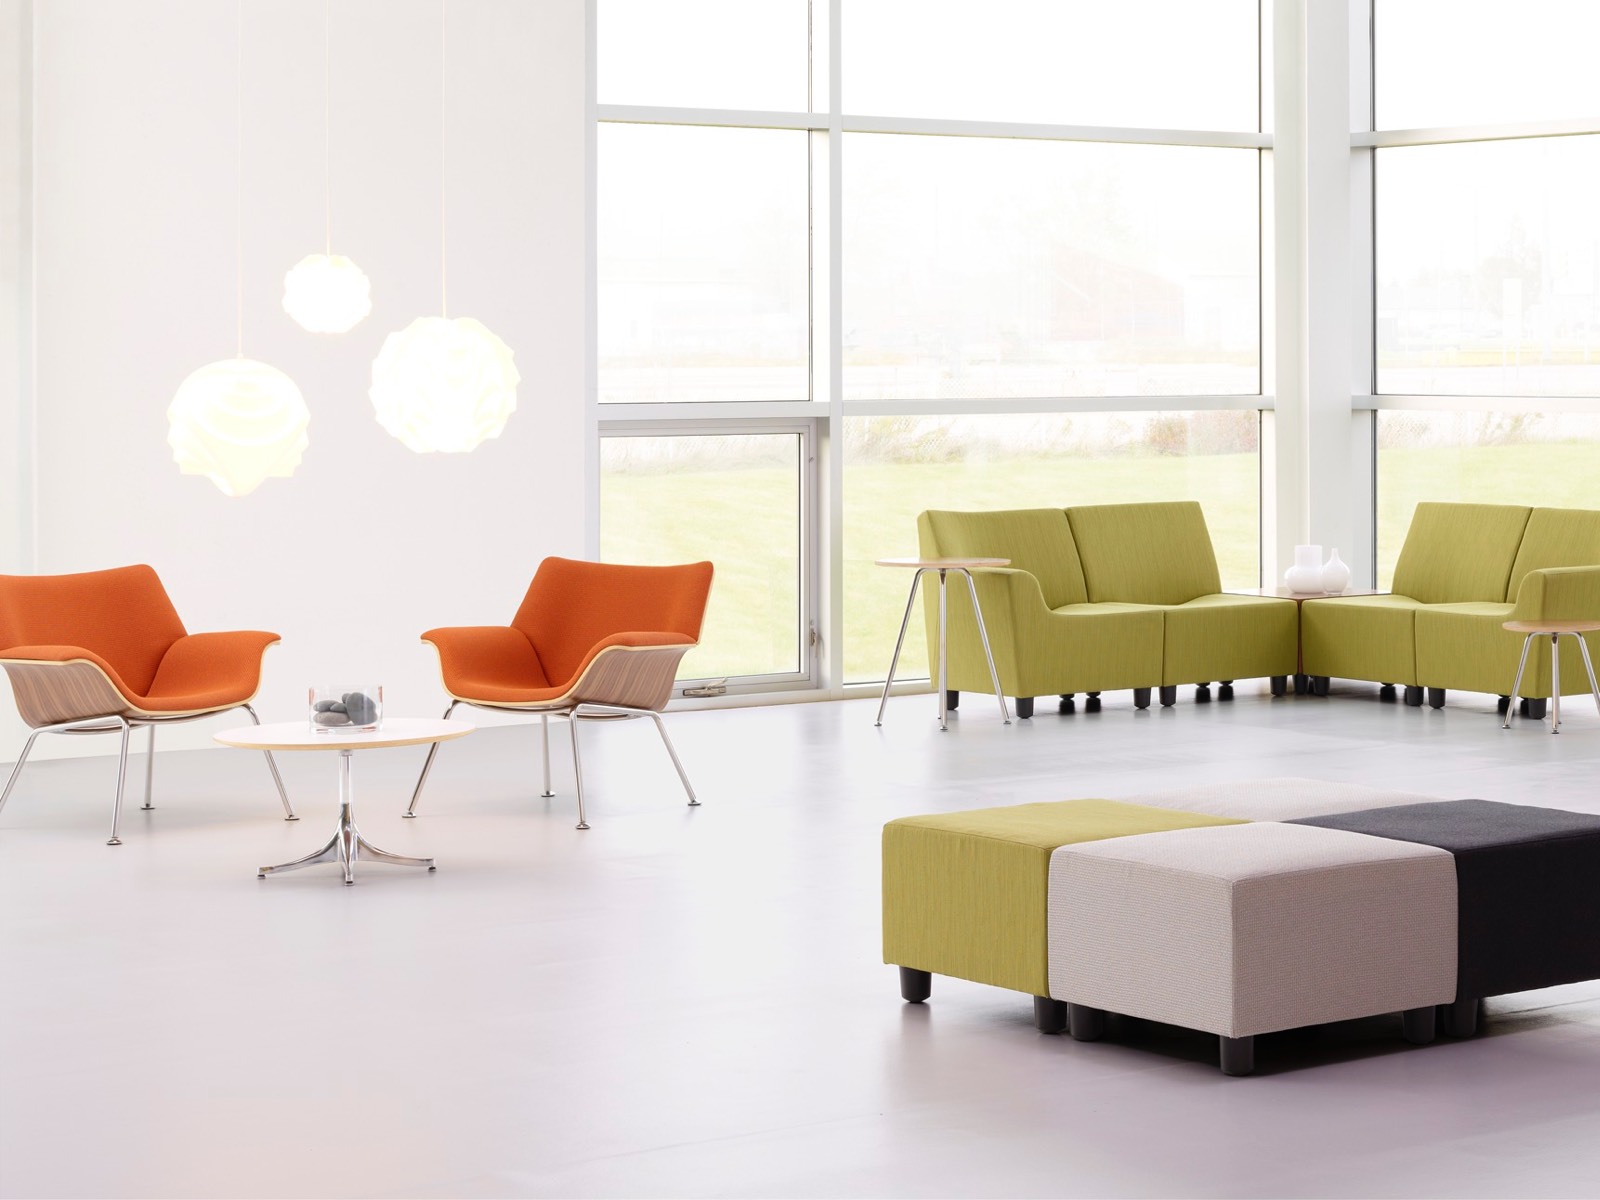 Sillones naranja Swoop y asientos modulares Shoop en verde en un espacio de reunión informal.